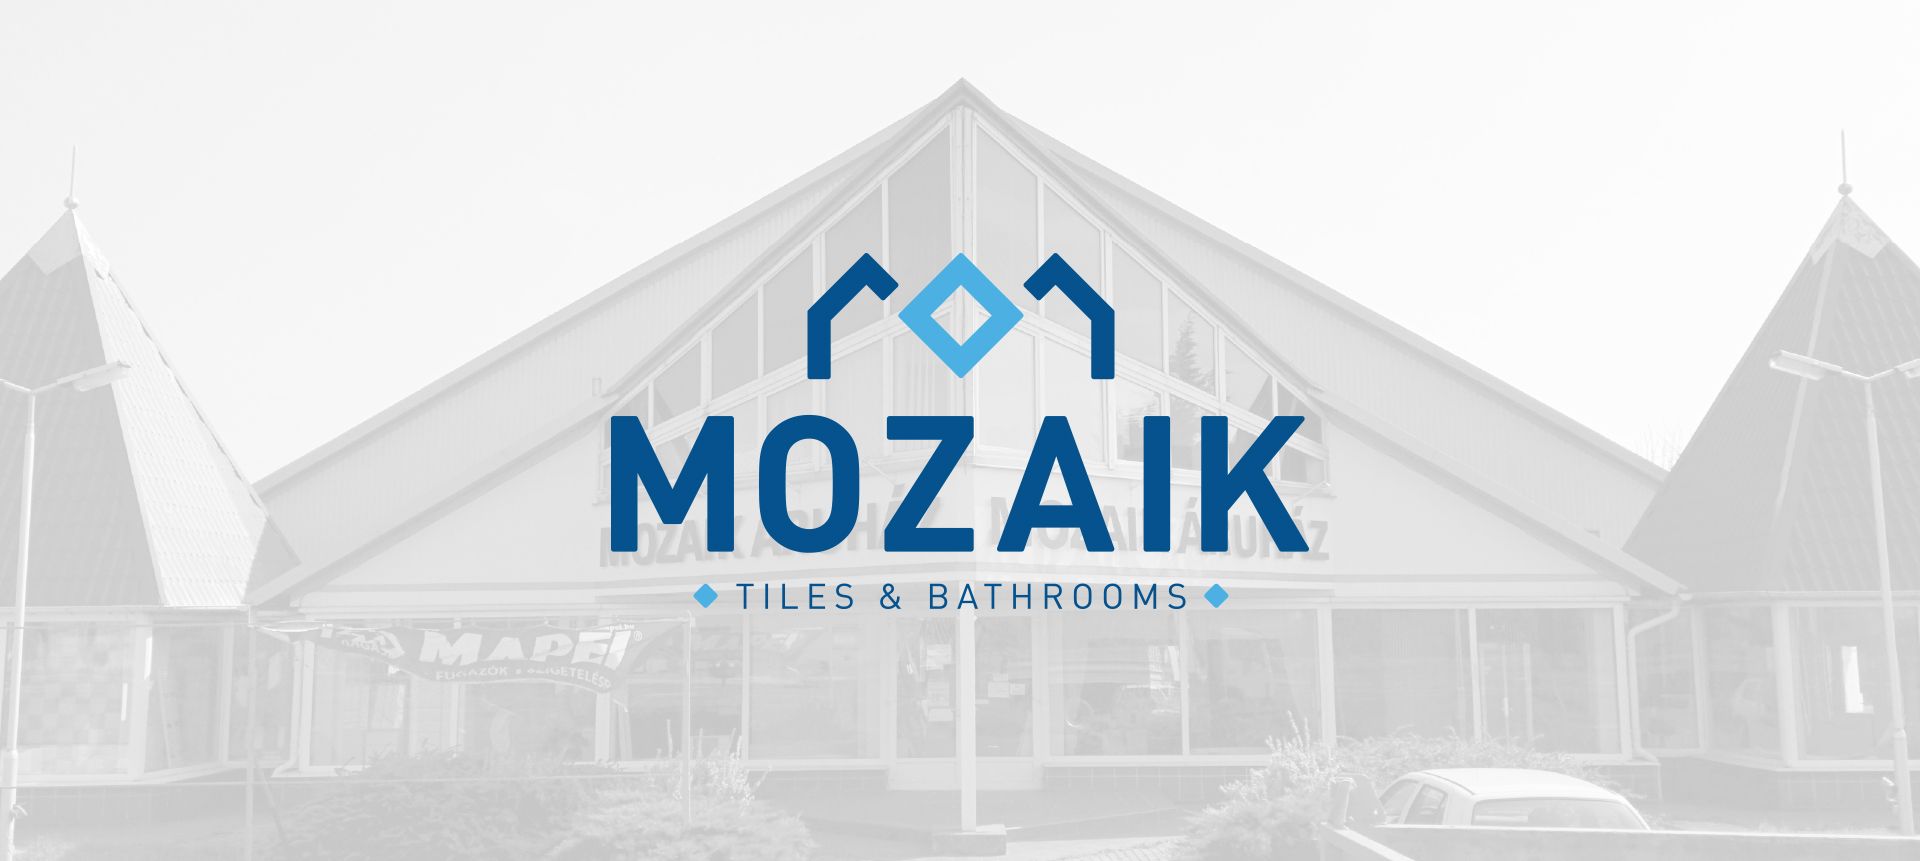 Mozaik logo on the shop